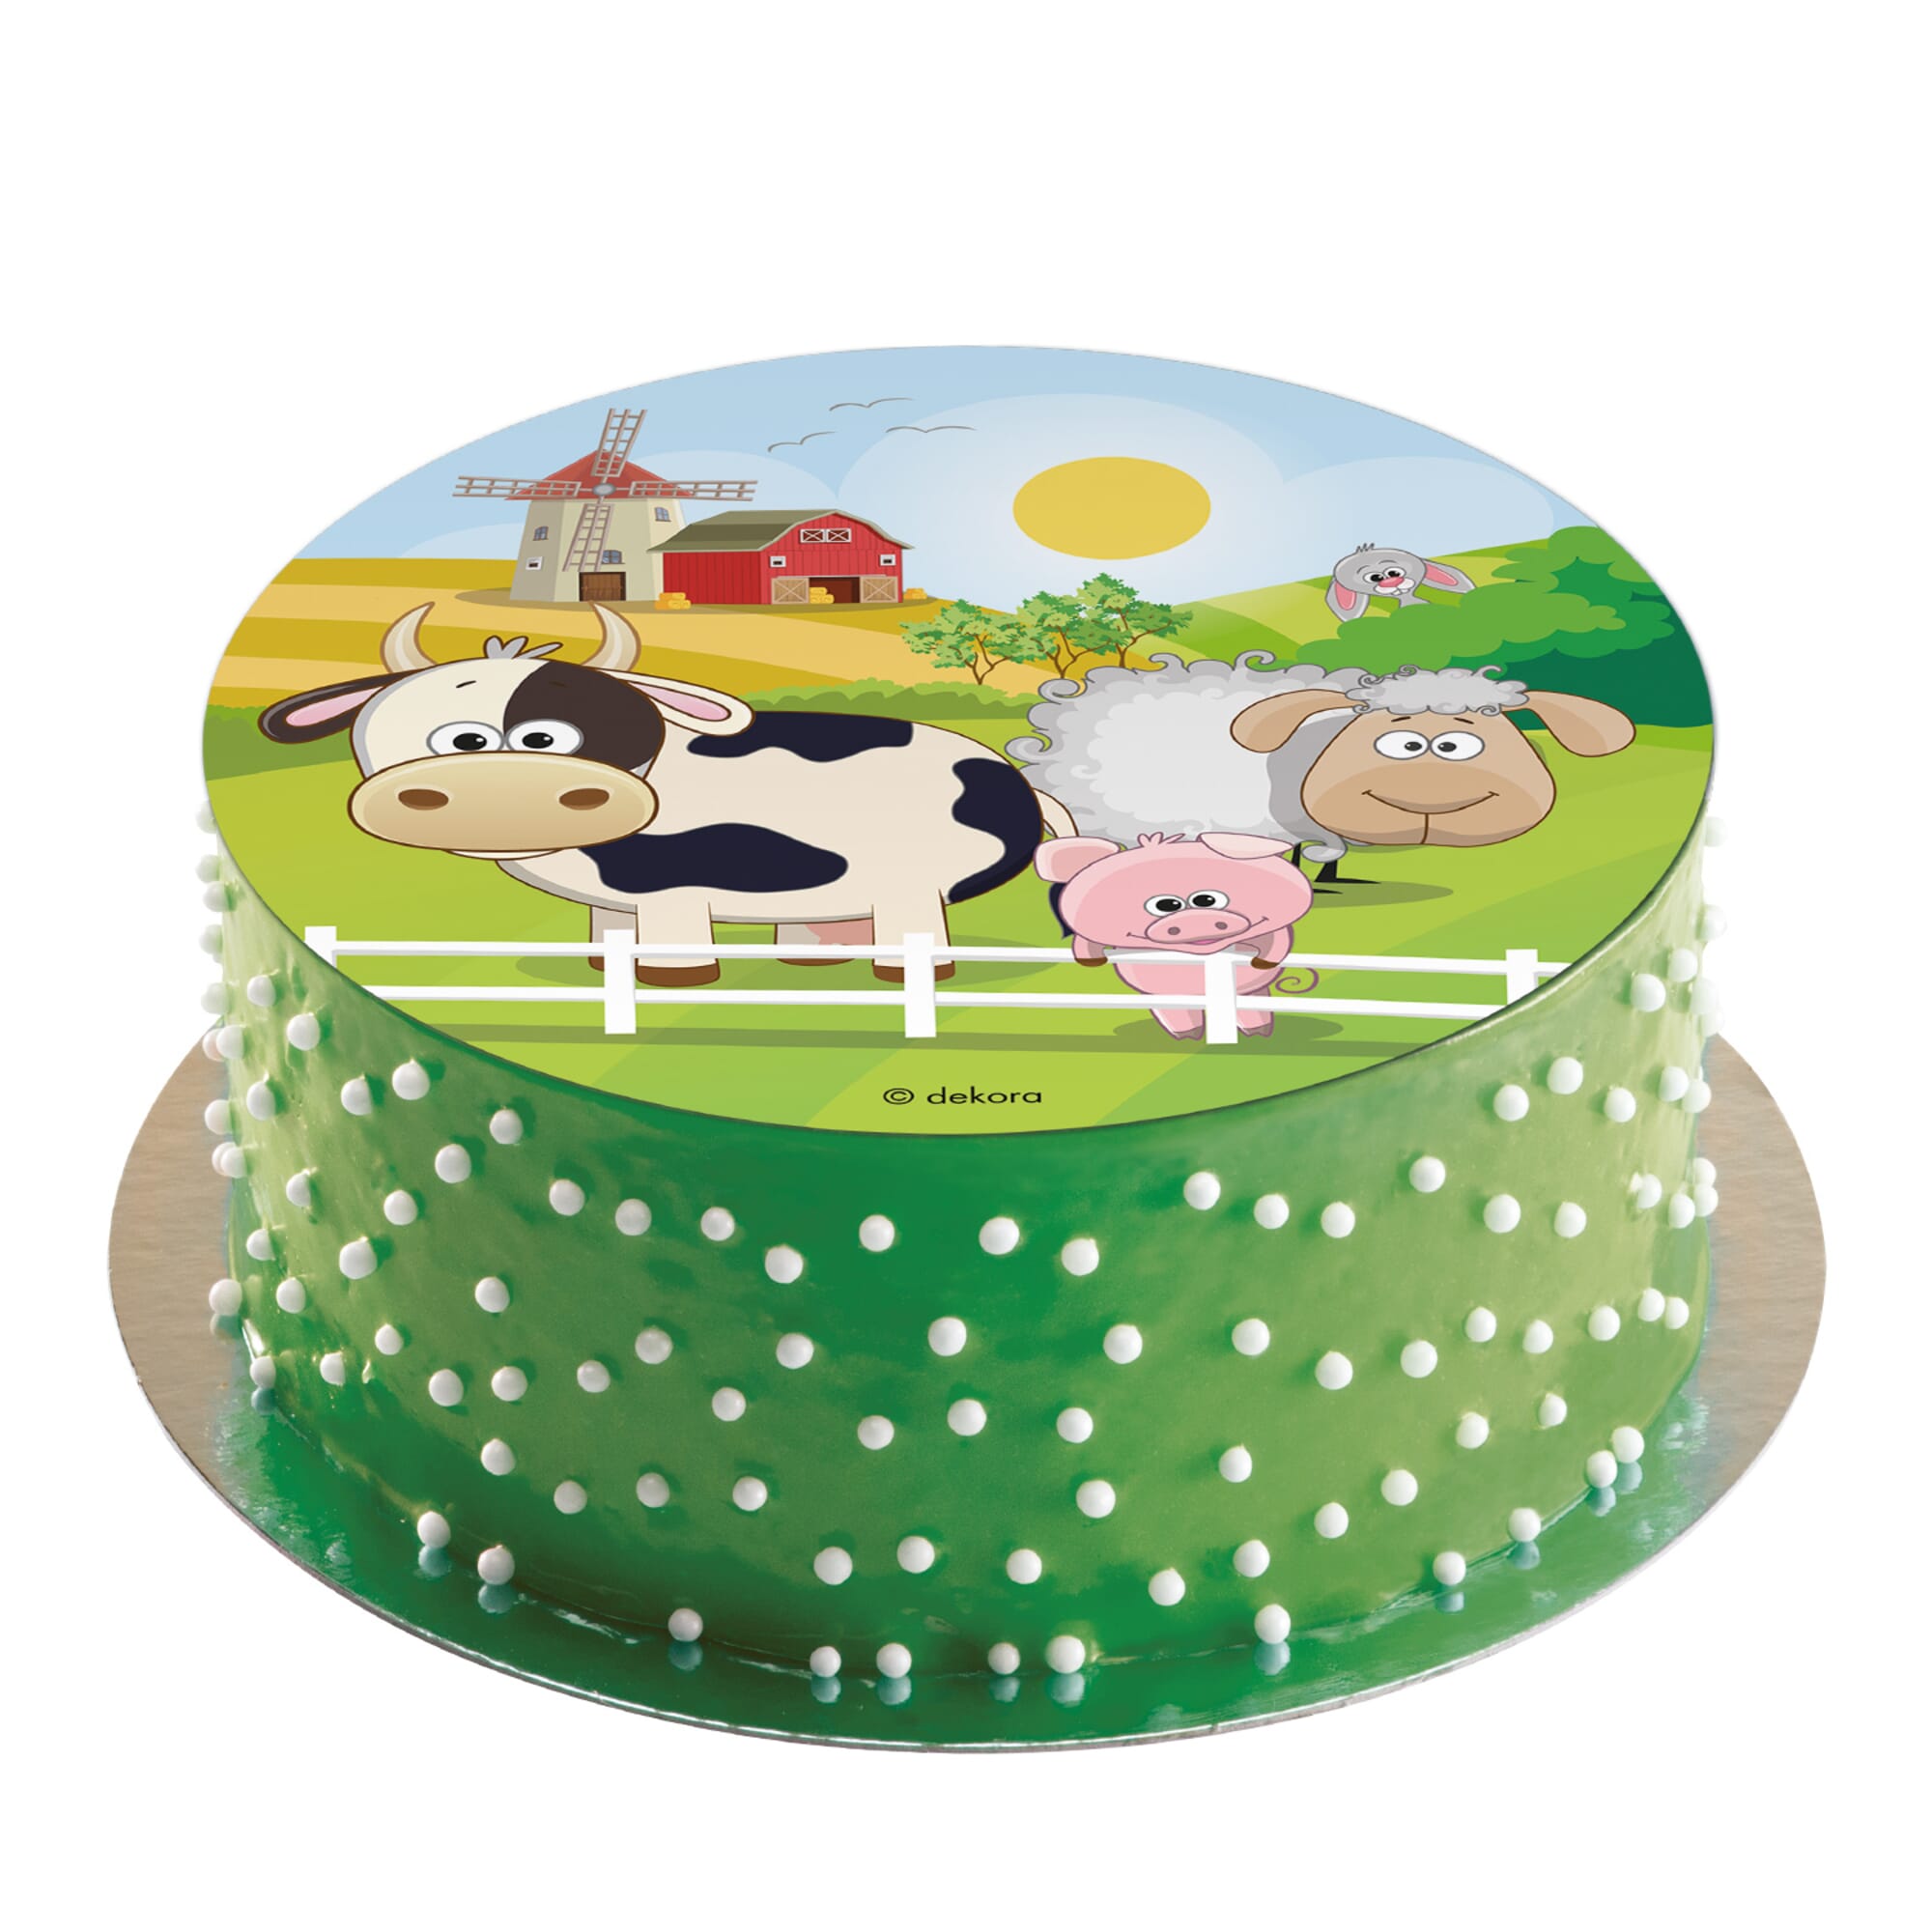 Décoration de gâteau comestible Farm Animals Ferme Vache Cochon Mouton  Décoration de gâteau Cake Topper